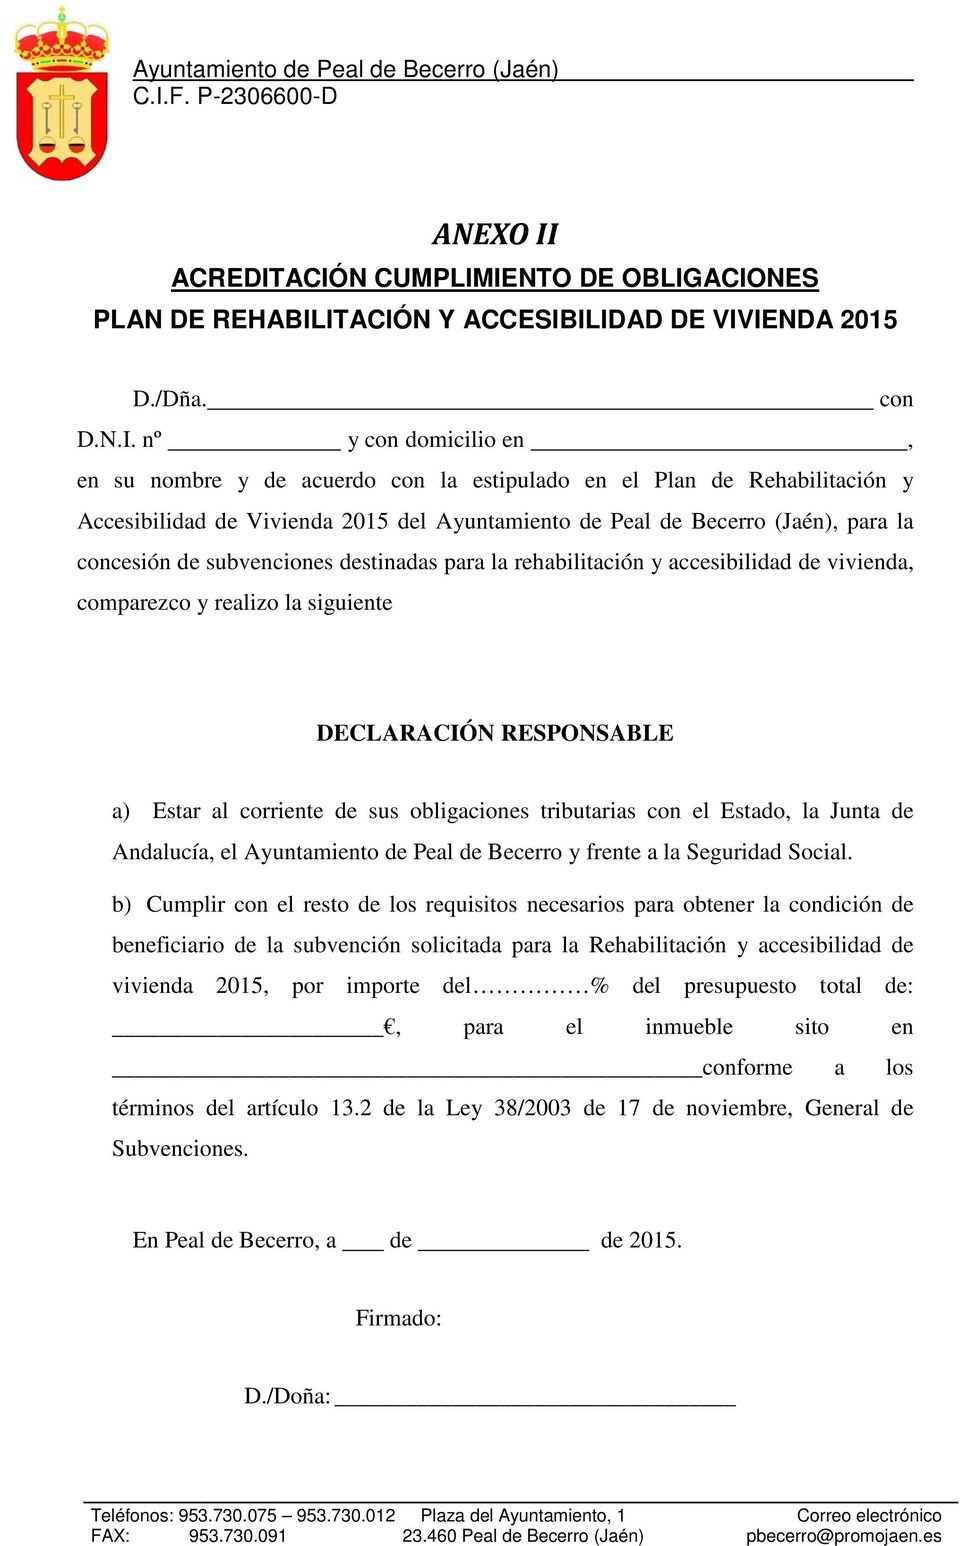 ACIÓN CUMPLIMIENTO DE OBLIGACIONES D./Dña. con D.N.I. nº y con domicilio en, en su nombre y de acuerdo con la estipulado en el Plan de Rehabilitación y Accesibilidad de Vivienda 2015 del Ayuntamiento